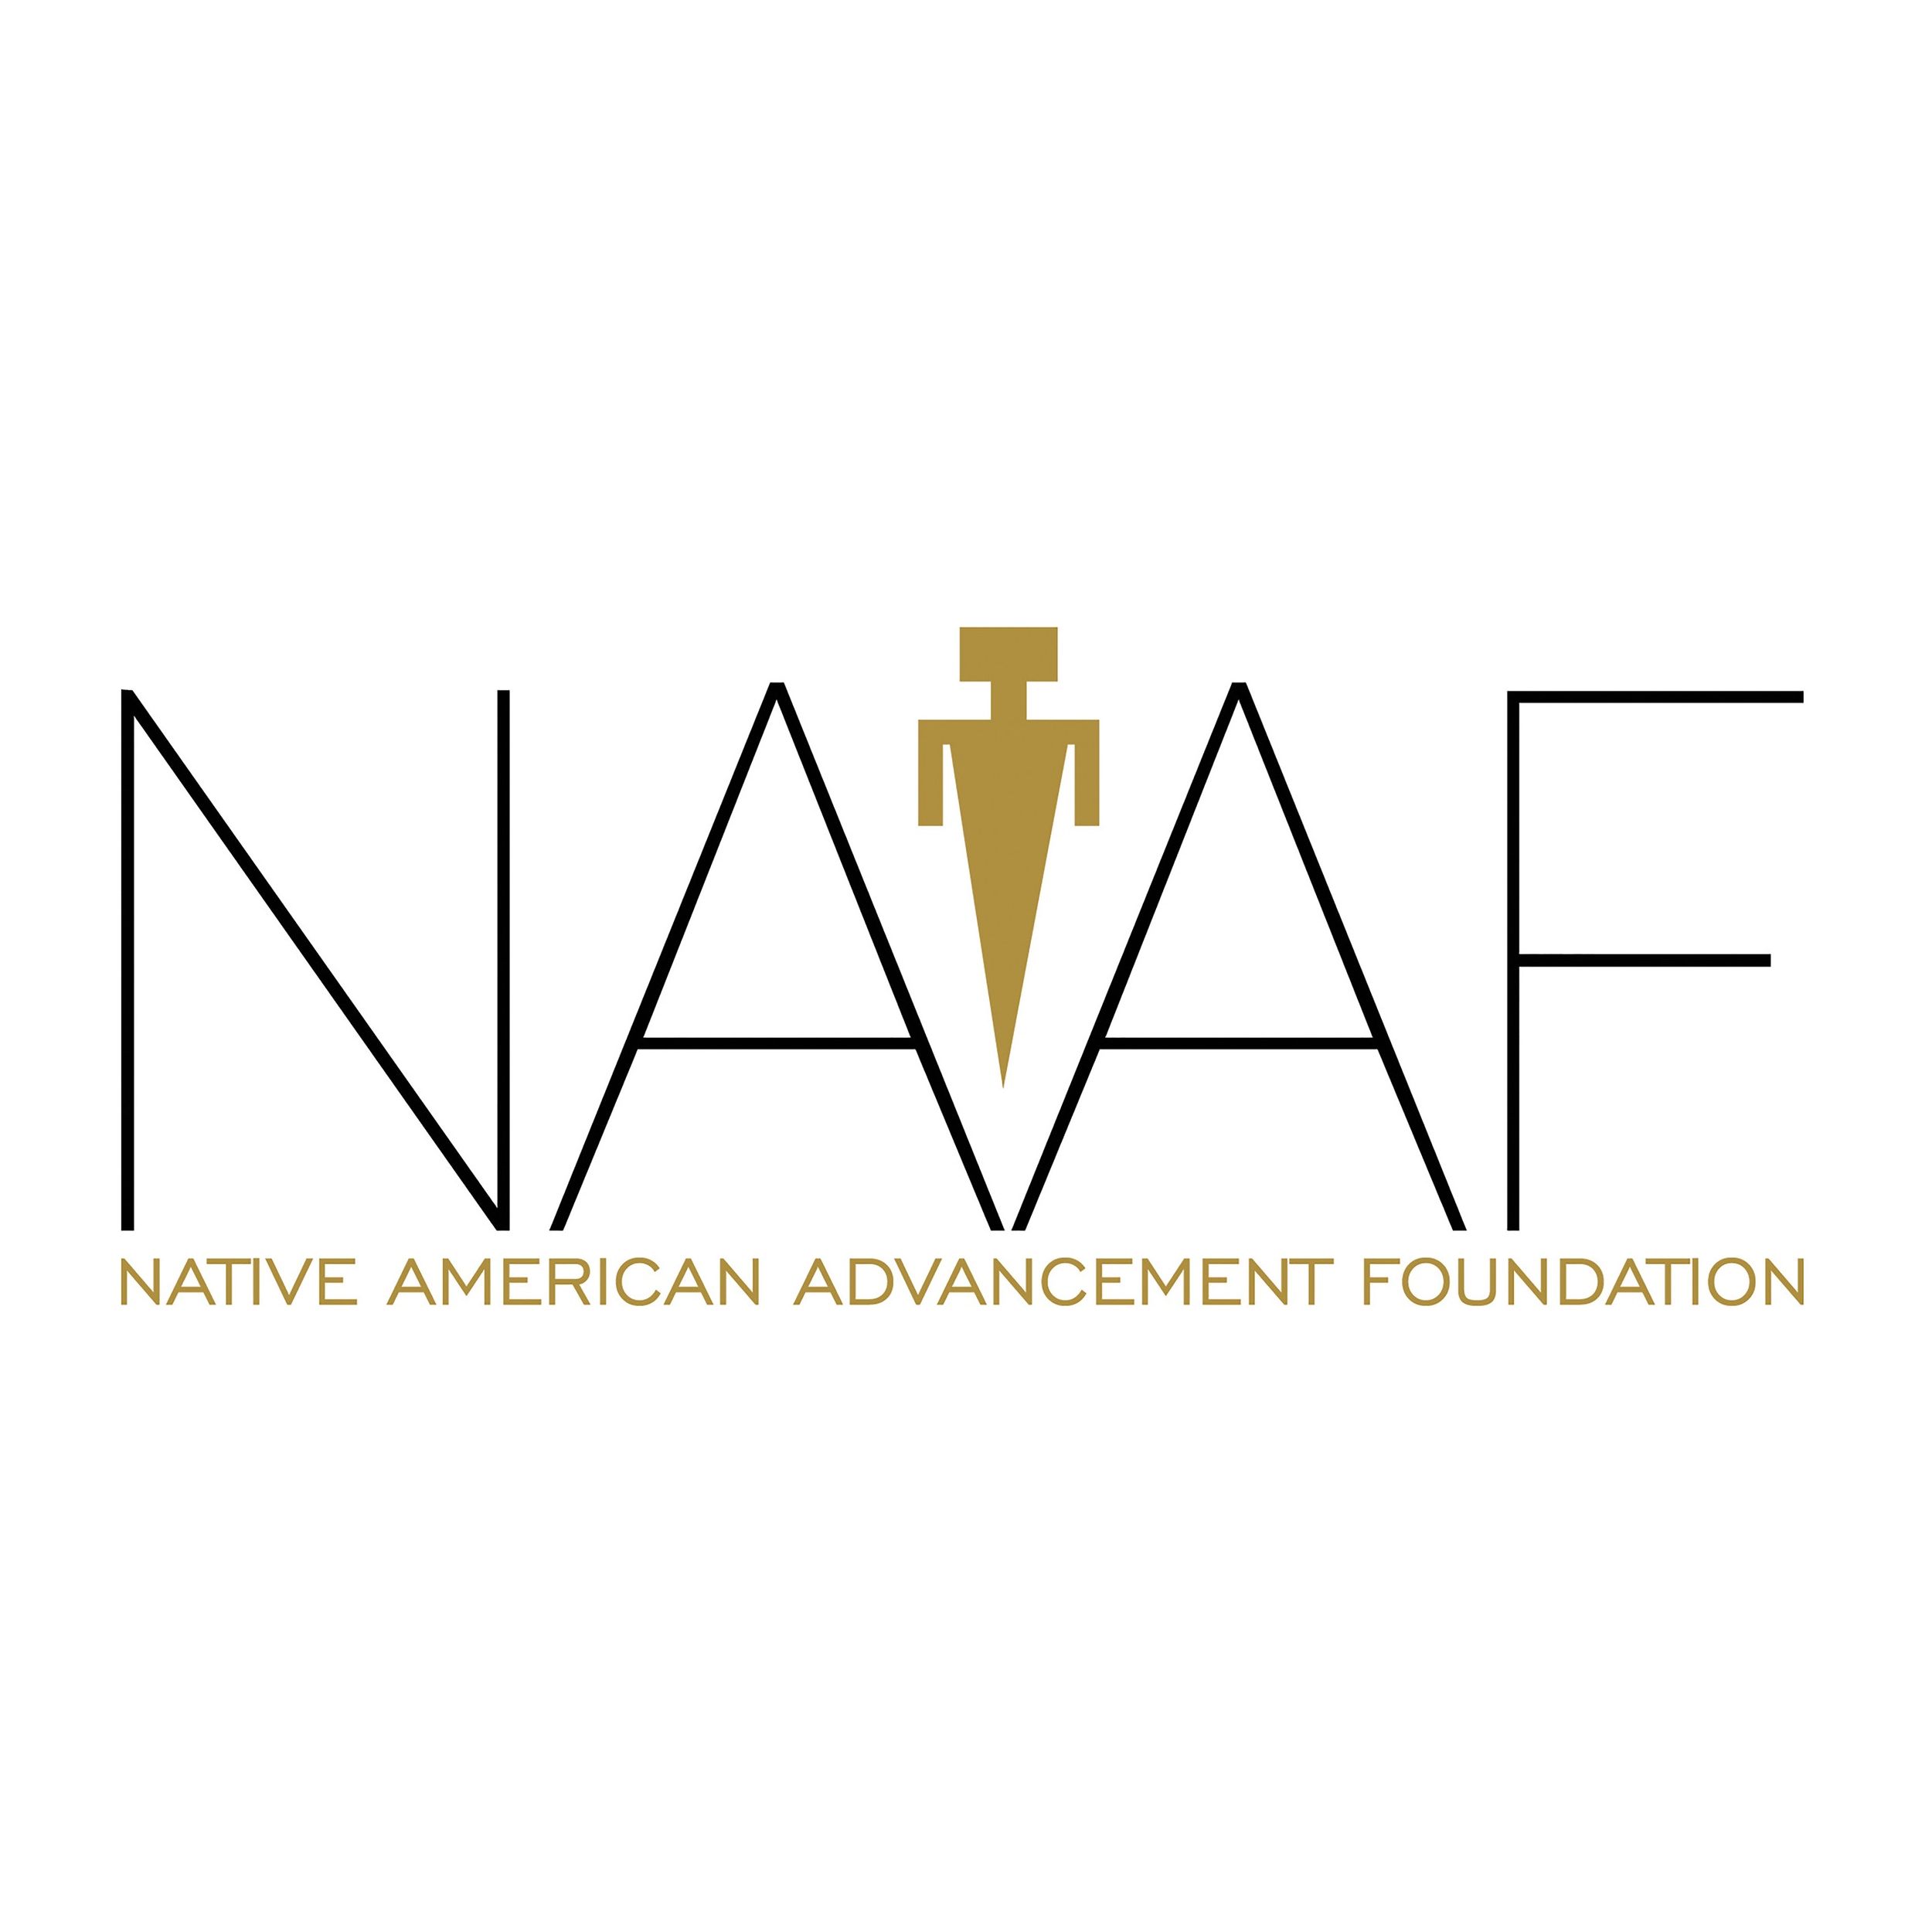 Native American Organization in Arizona - Native American Advancement Foundation